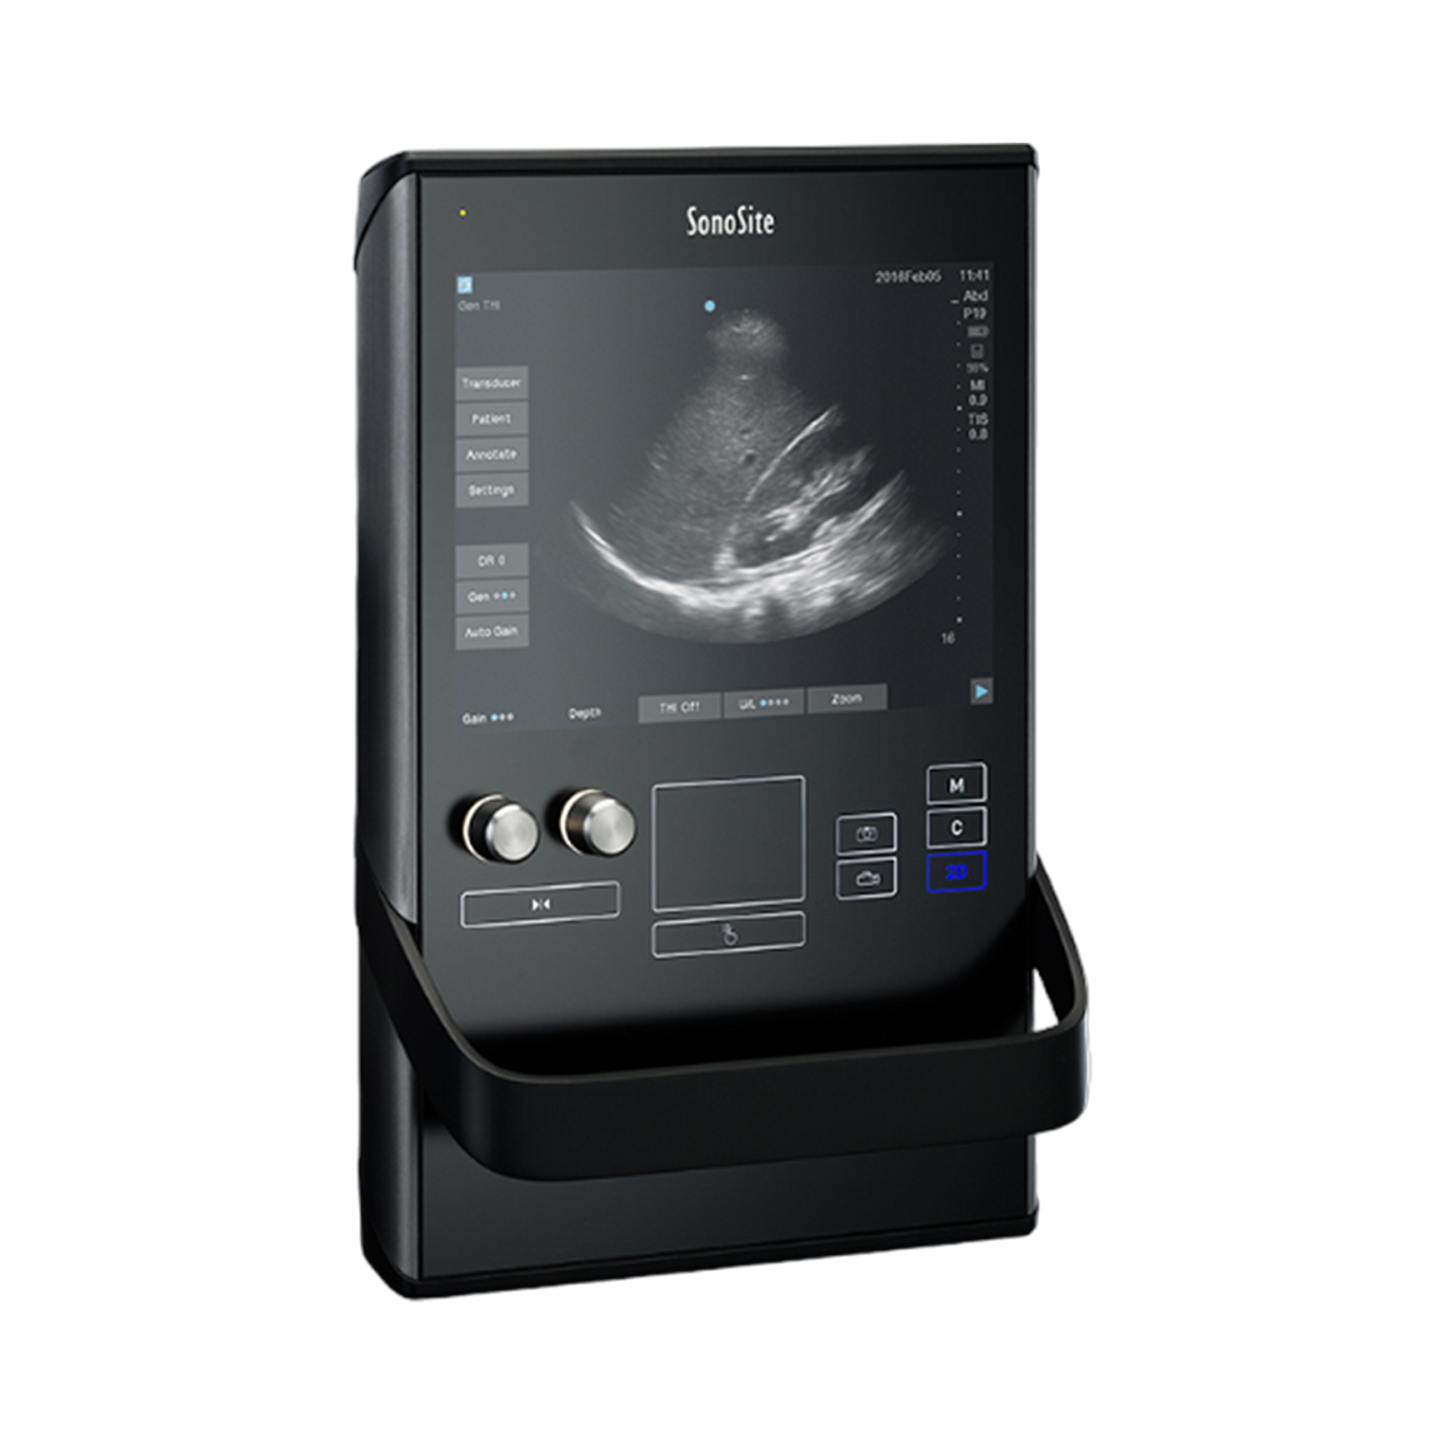 Sonosite SII Portable Ultrasound Machine